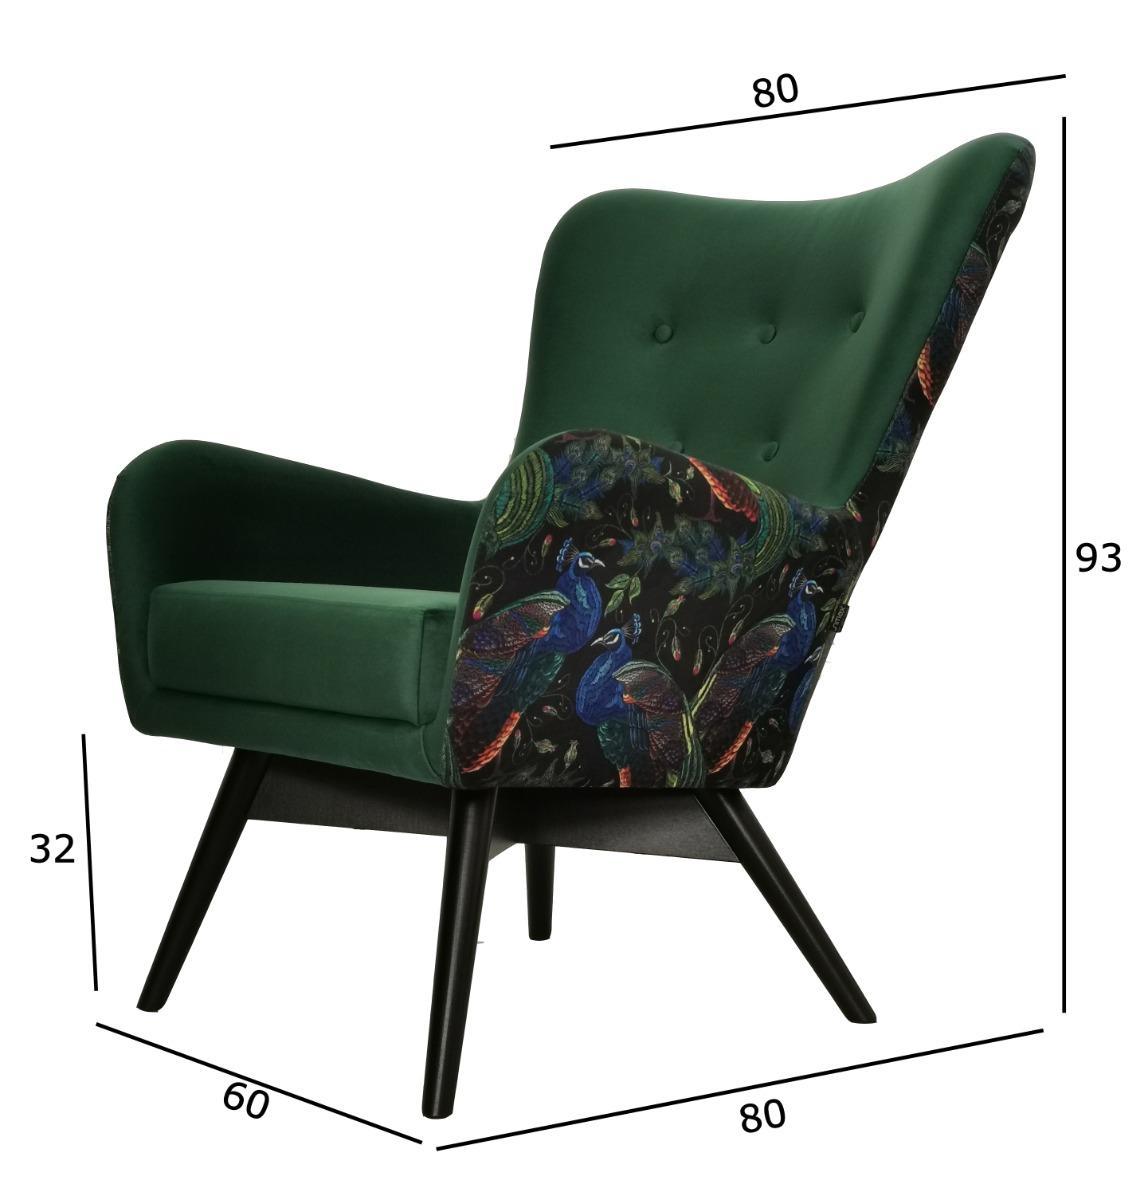 Fotel skandynawski GRANDE 80x93x80 cm zielony we wzory pawie do salonu 4 Full Screen